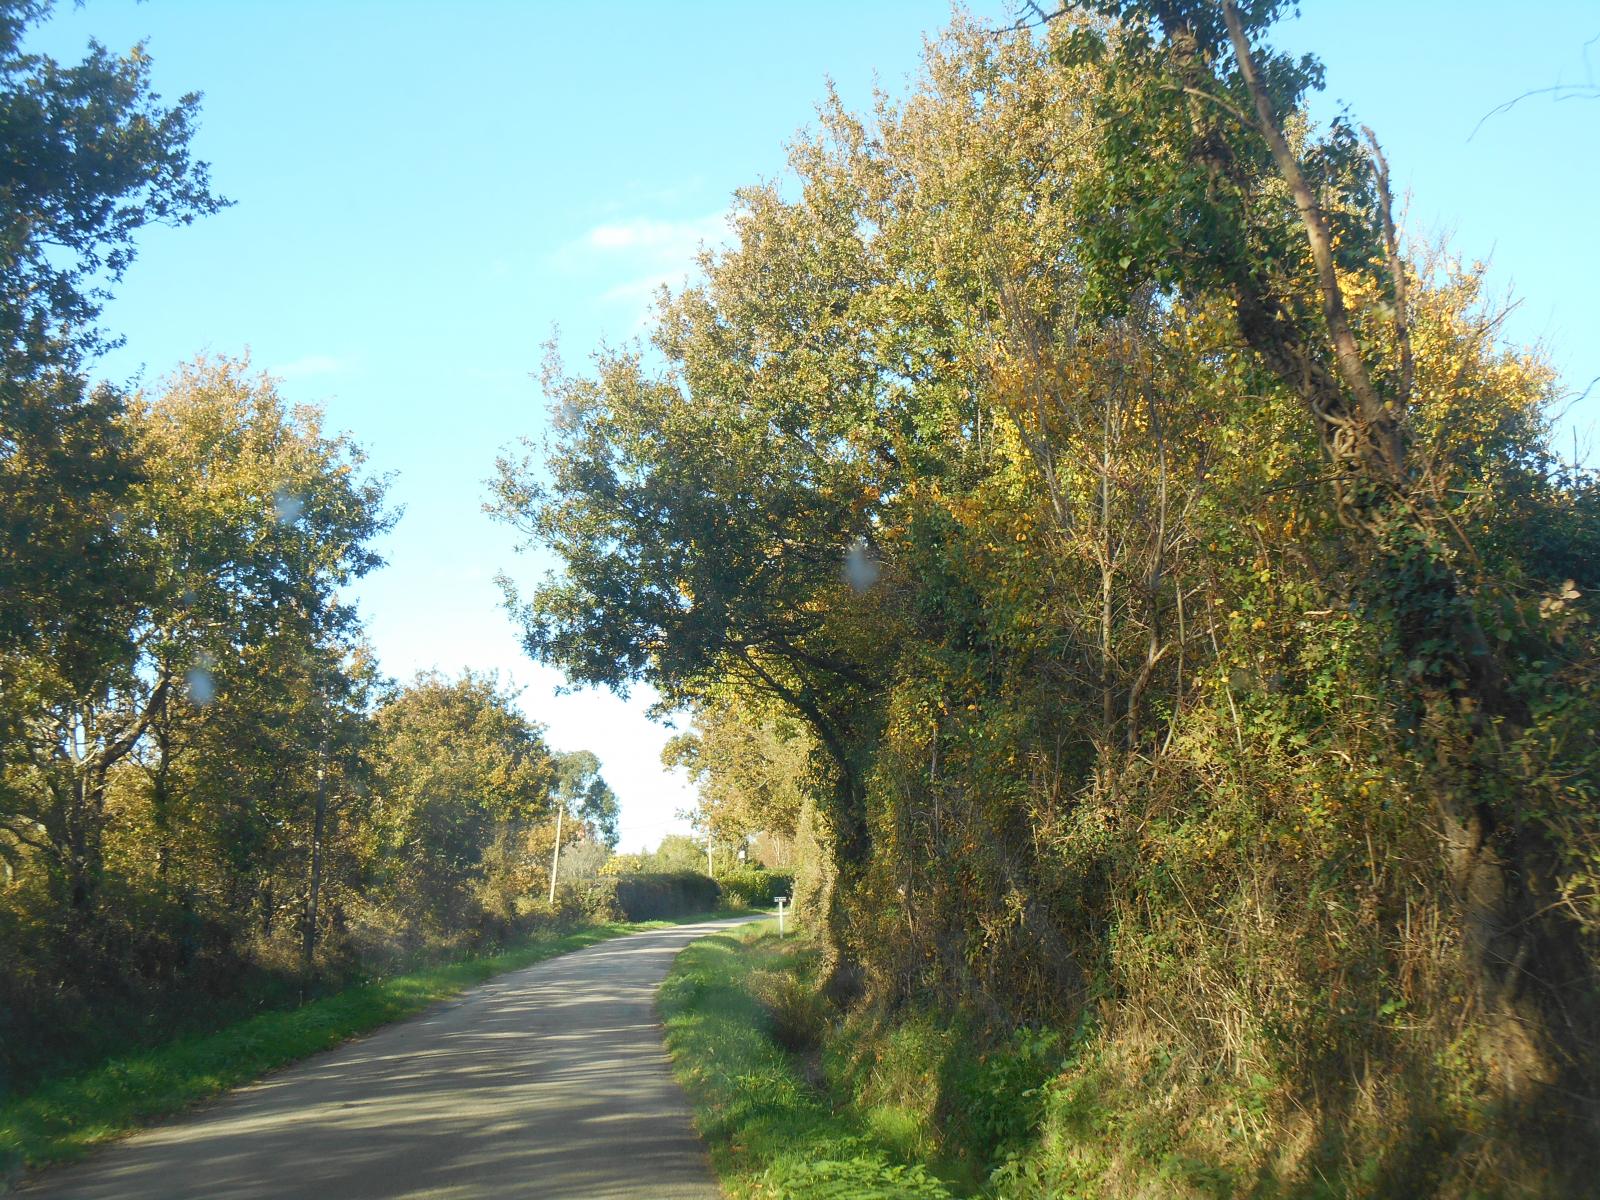 La route entourée d\'arbres dorés ( Les Moutiers en Retz )